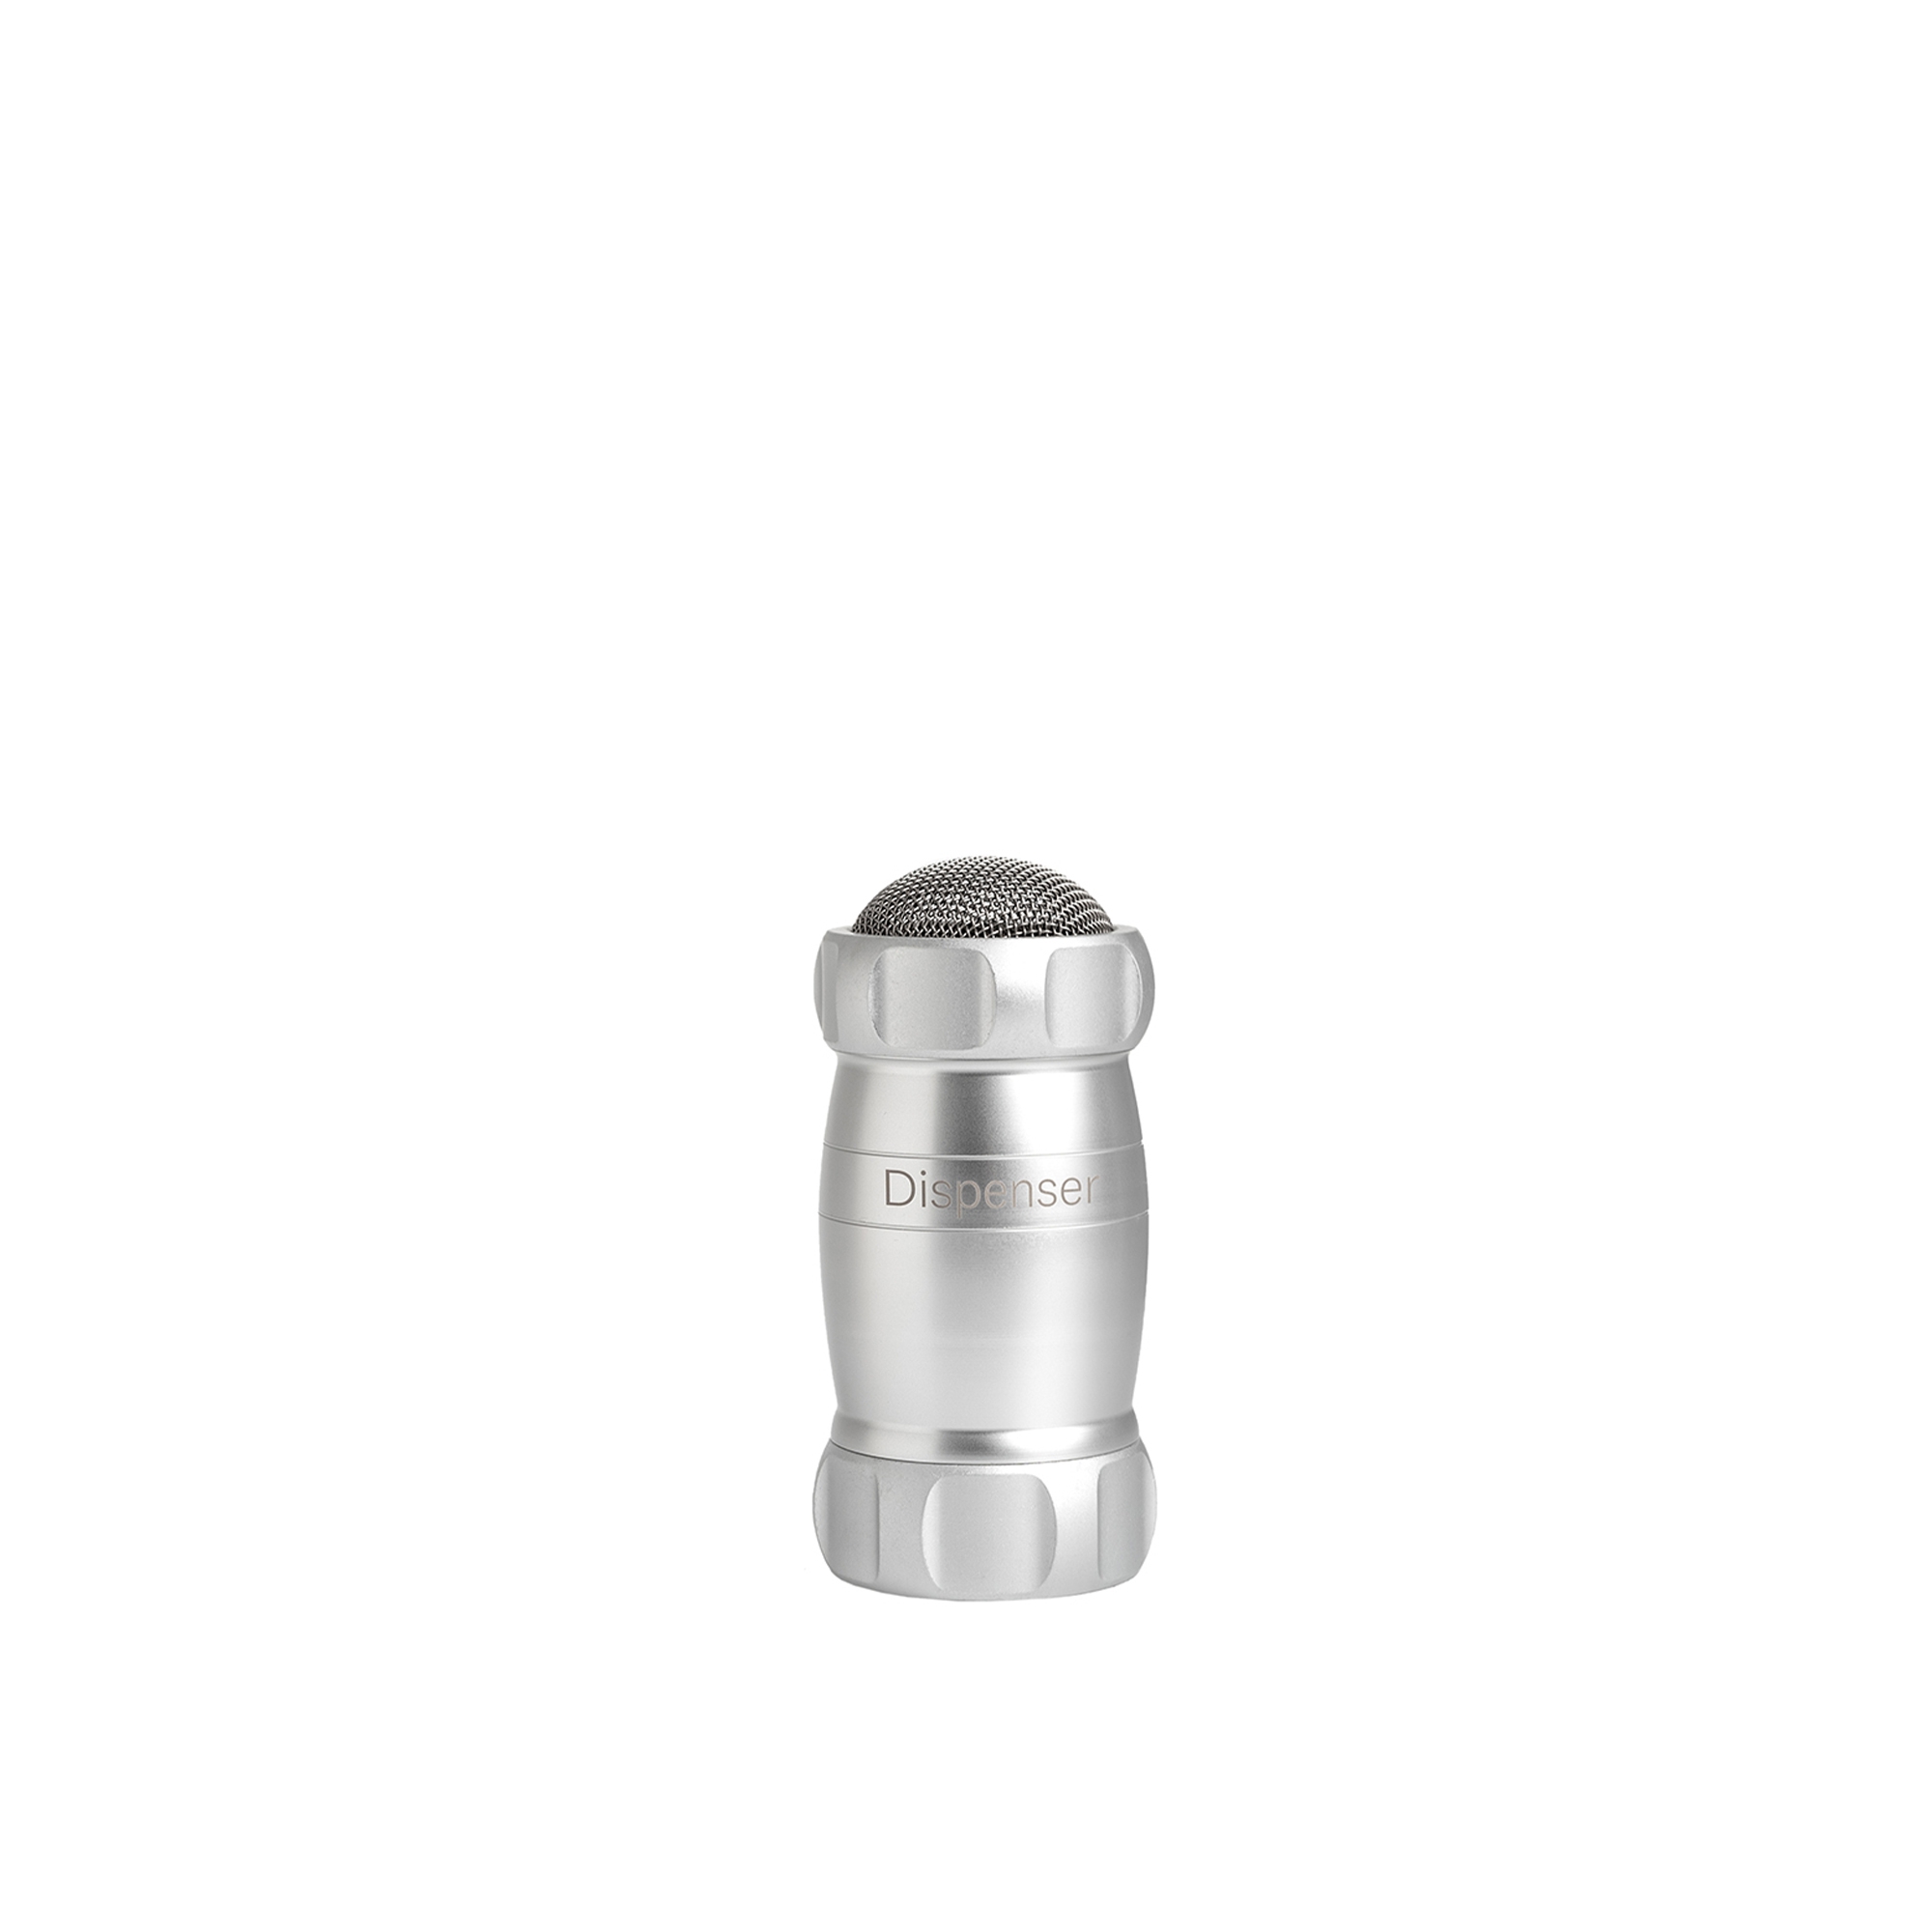 Marcato - Dispenser Design - Silber